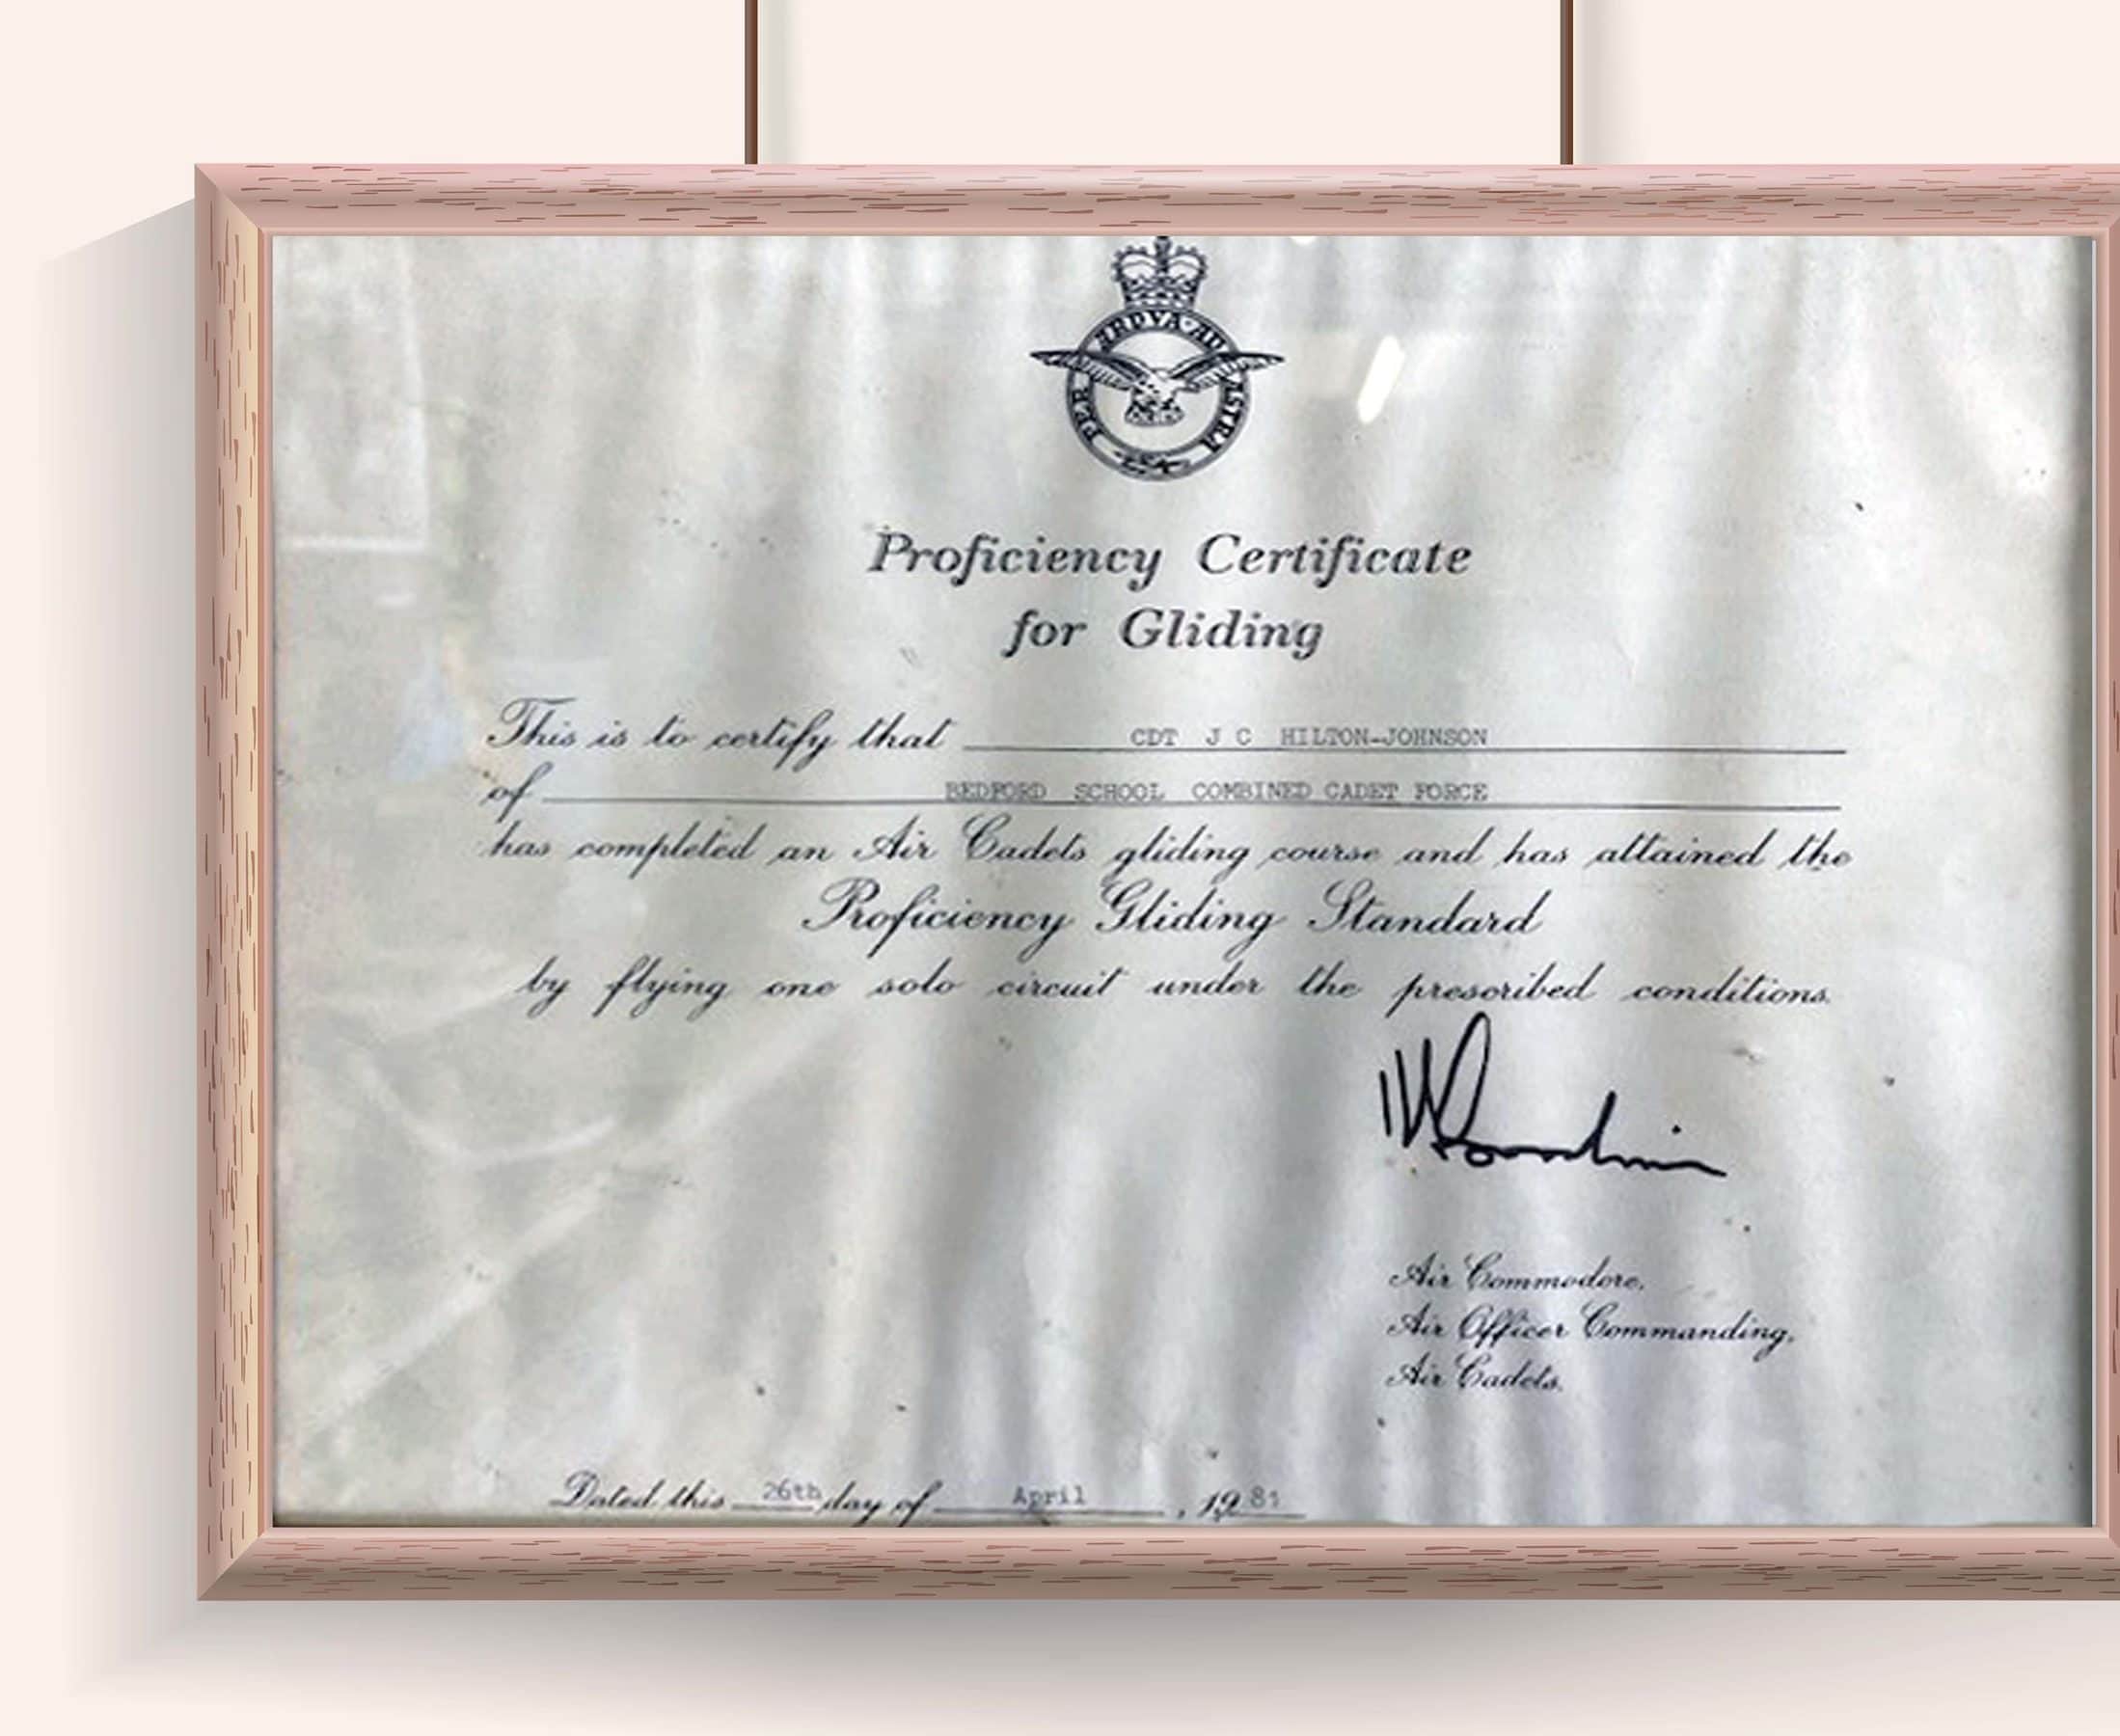 Julian's Flying Certificate